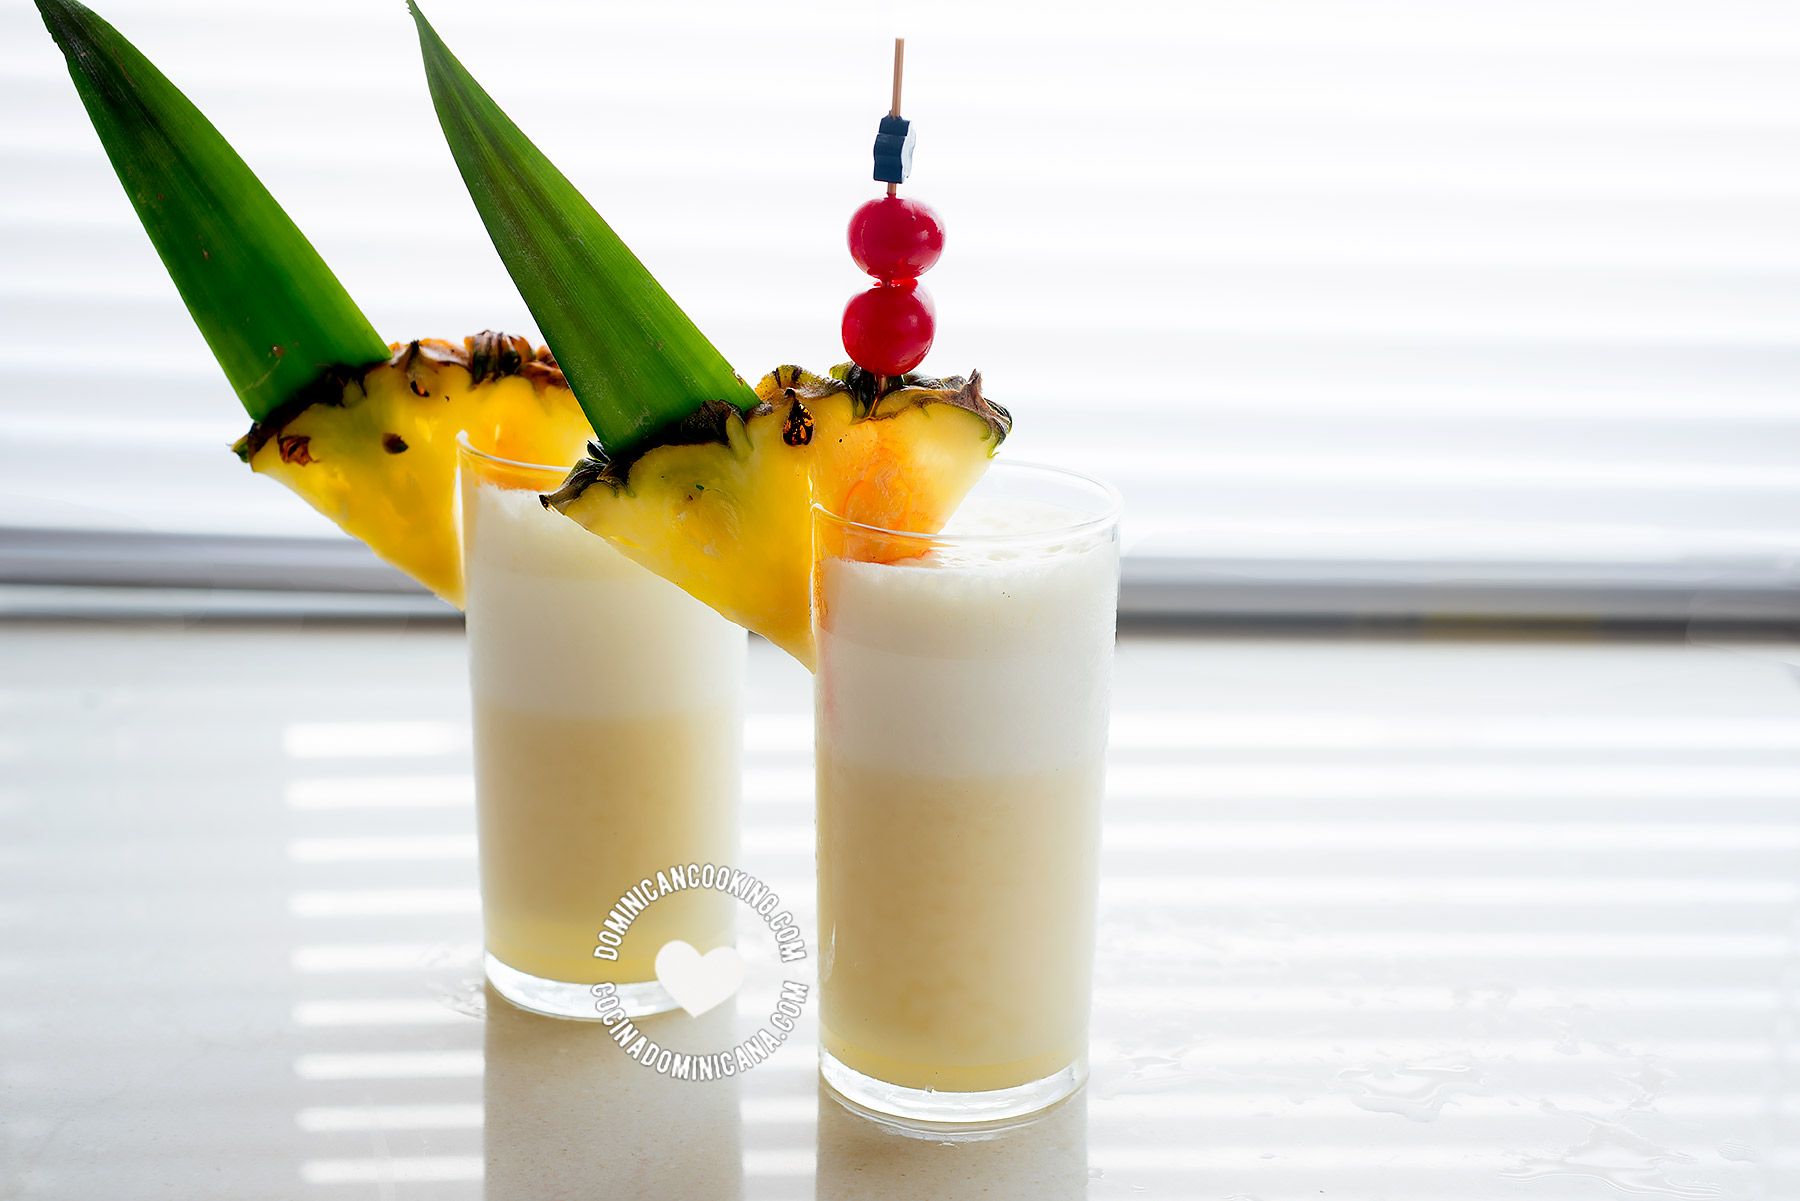 Piña Colada: Recipe + Video of Best Rum, Pineapple & Coconut Cocktail